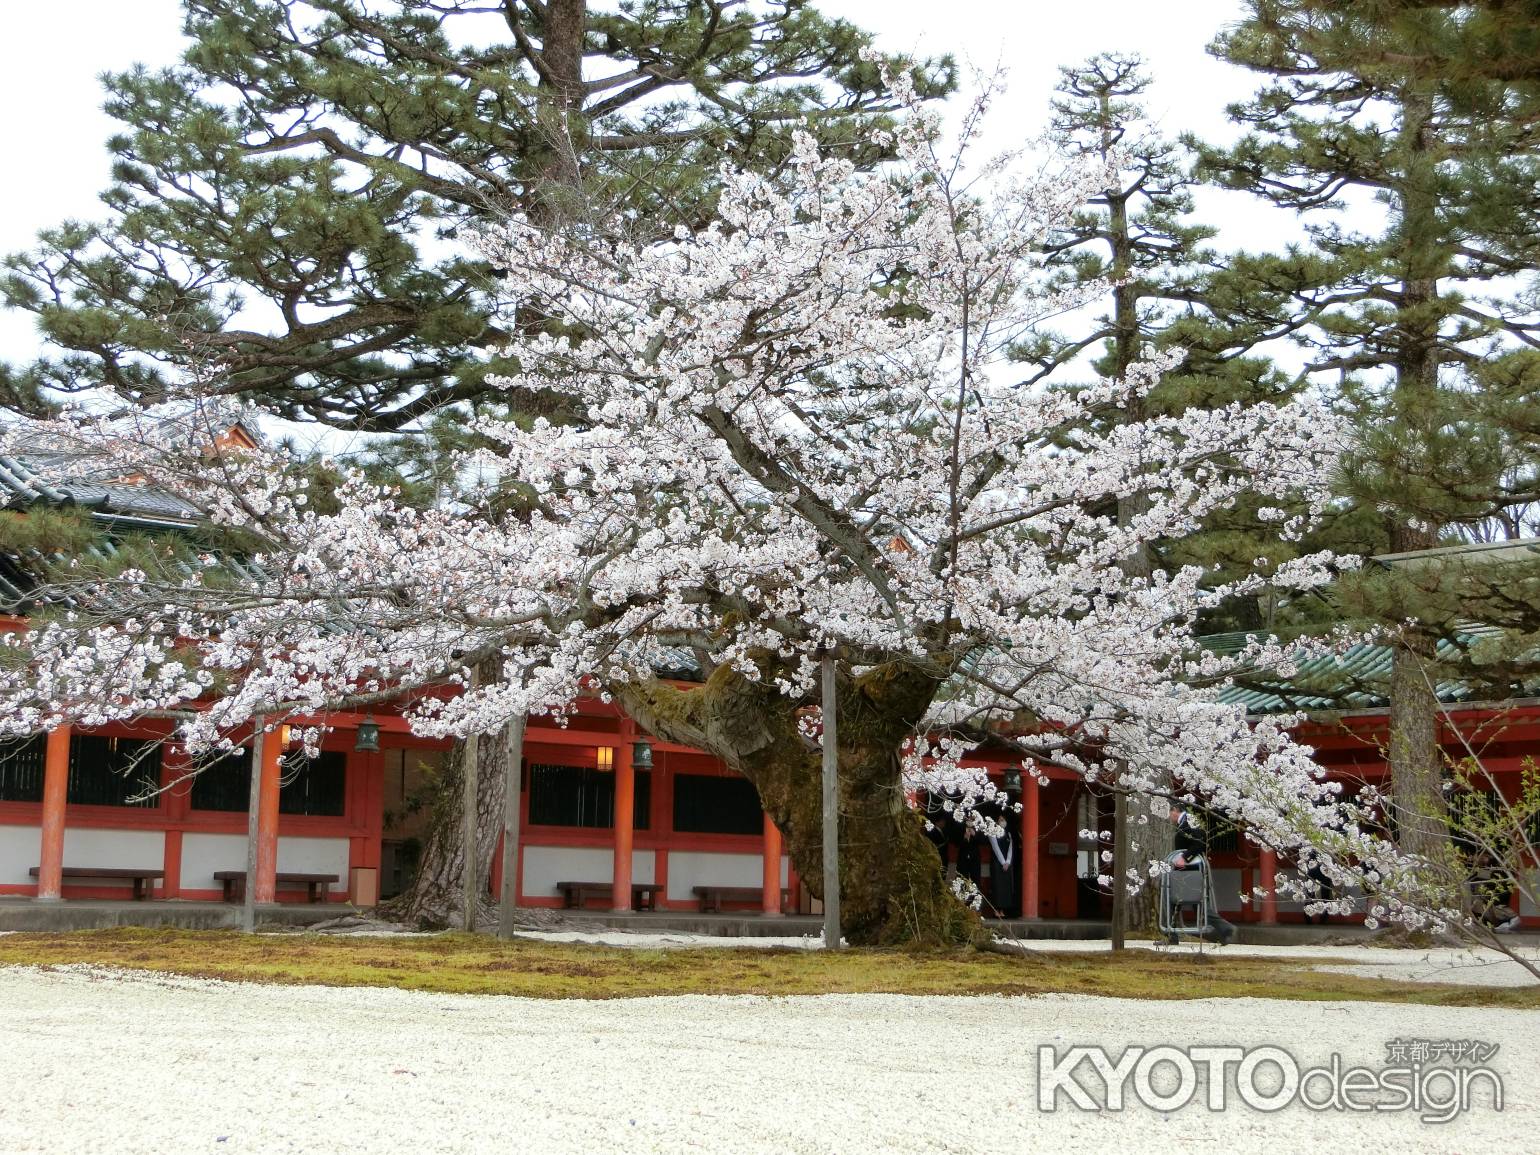 平安神宮の桜1